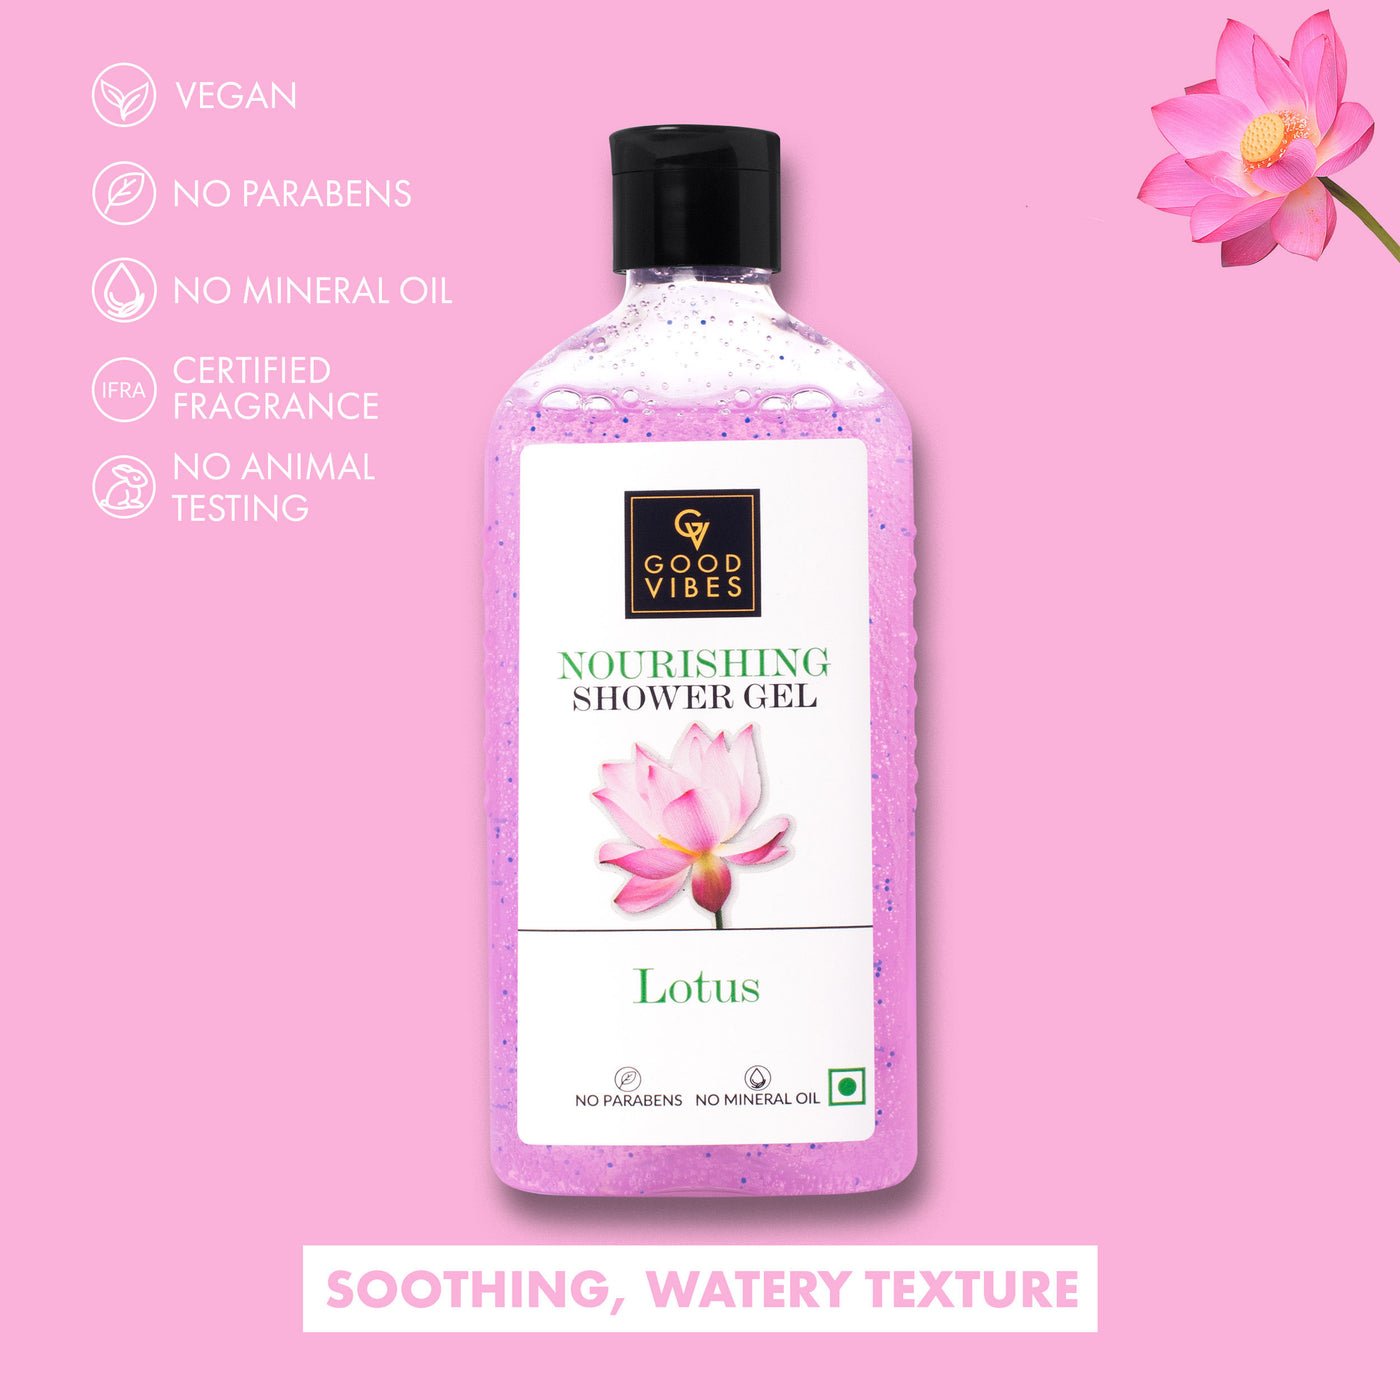 good-vibes-nourishing-shower-gel-lotus-300-ml-4